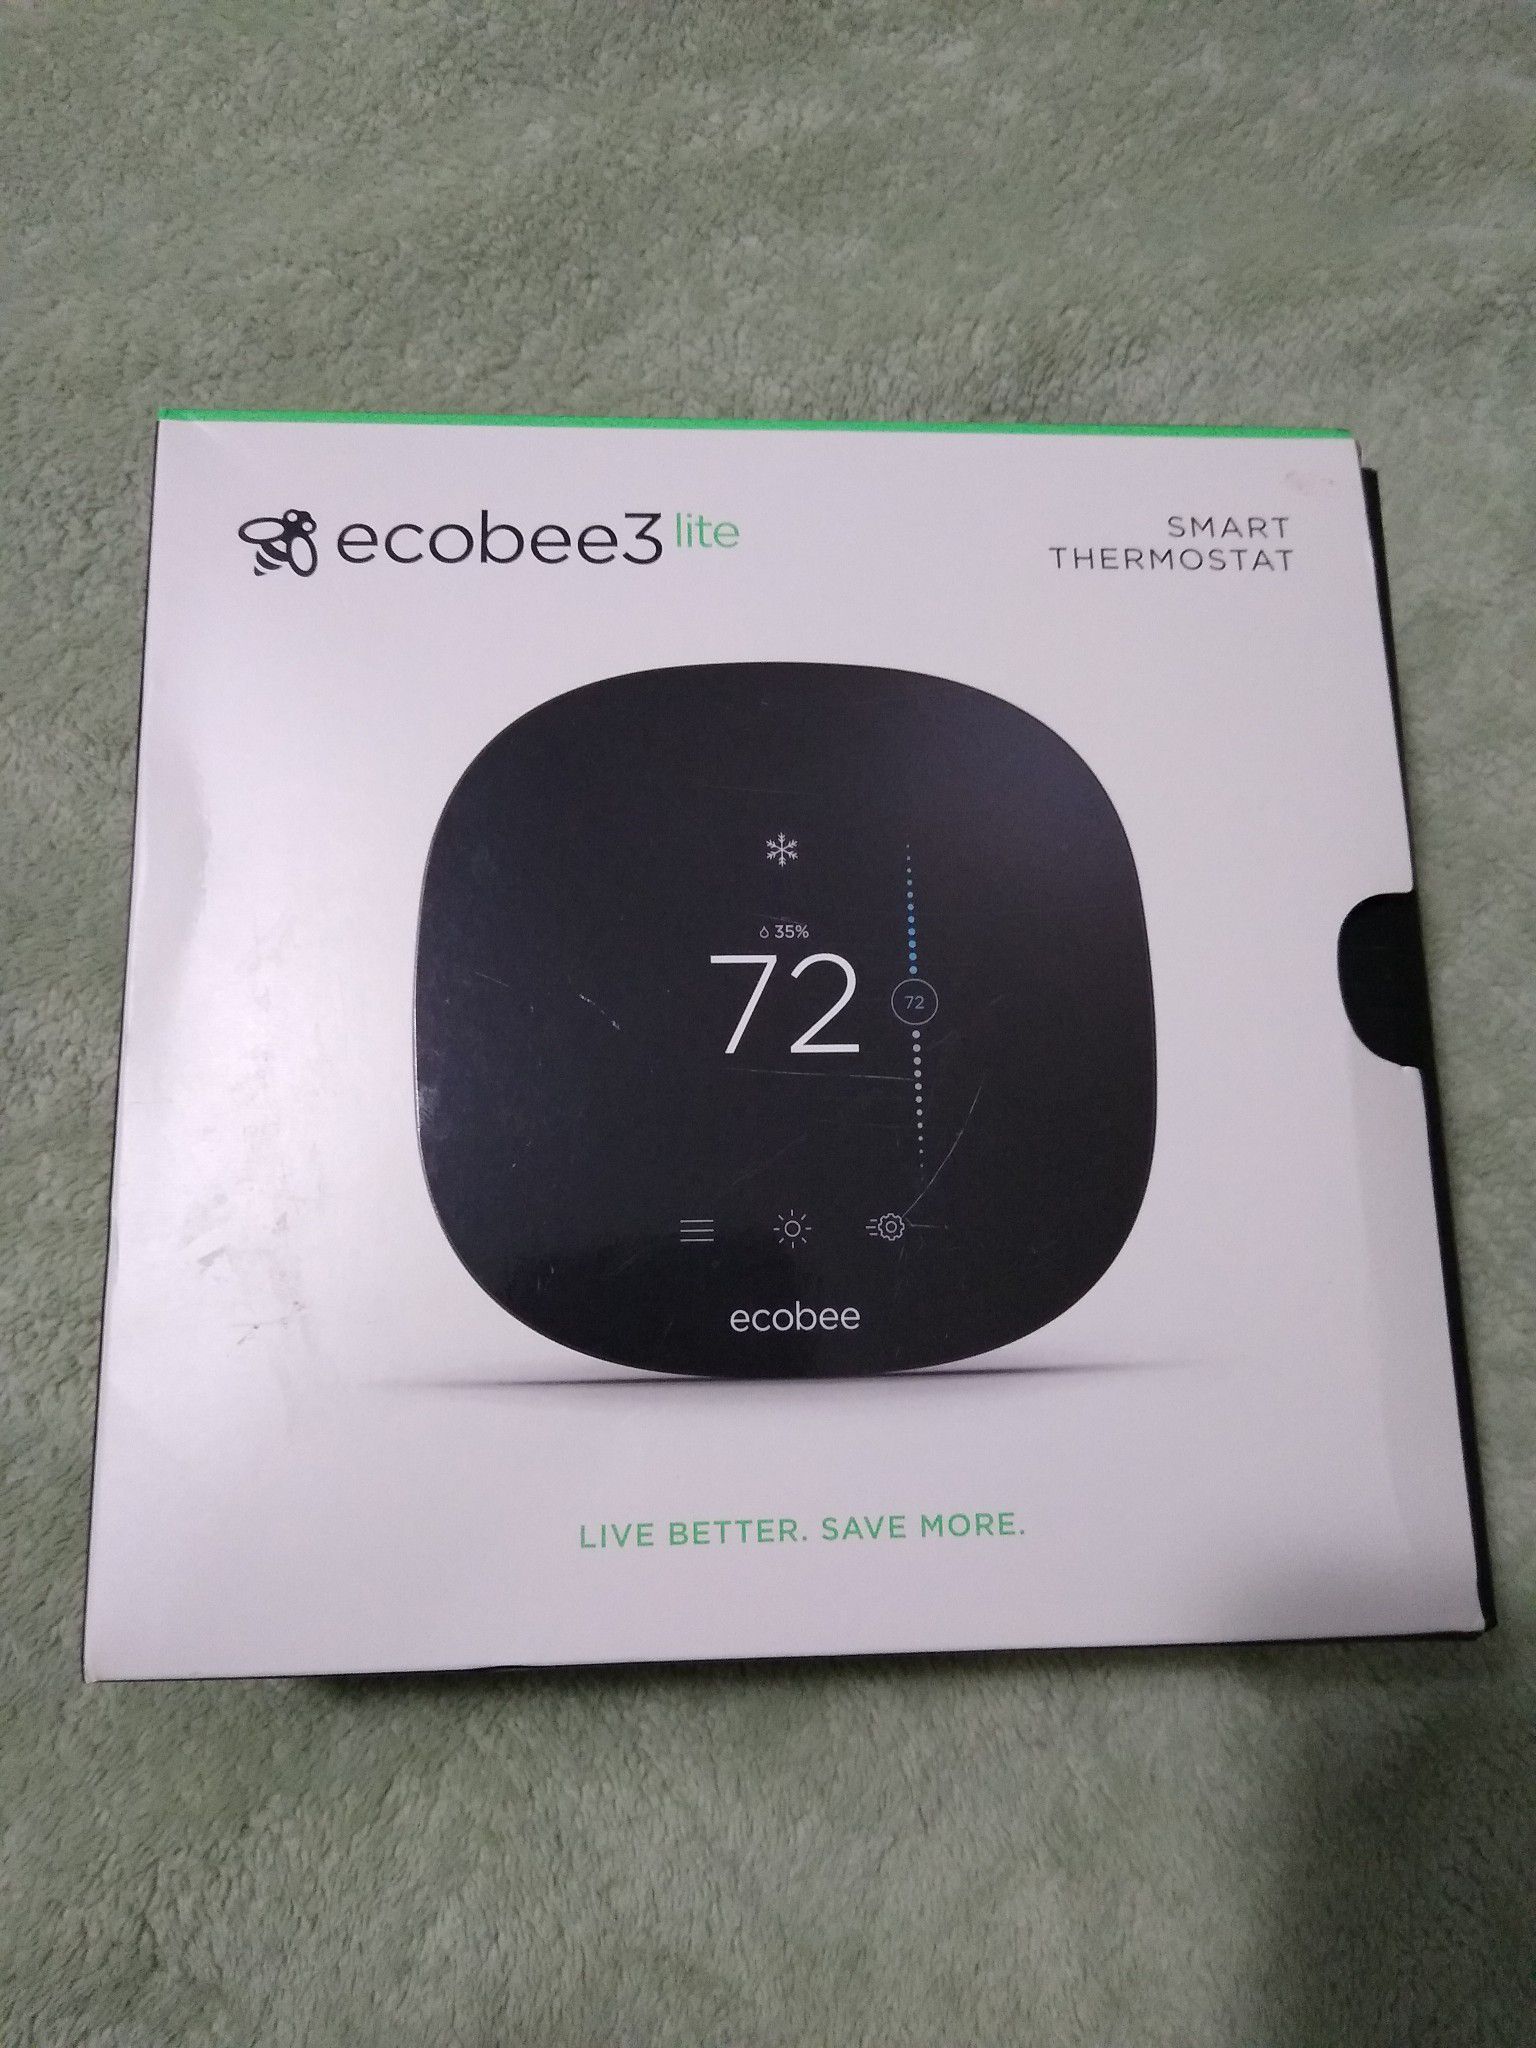 Ecobee 3 lite thermostat